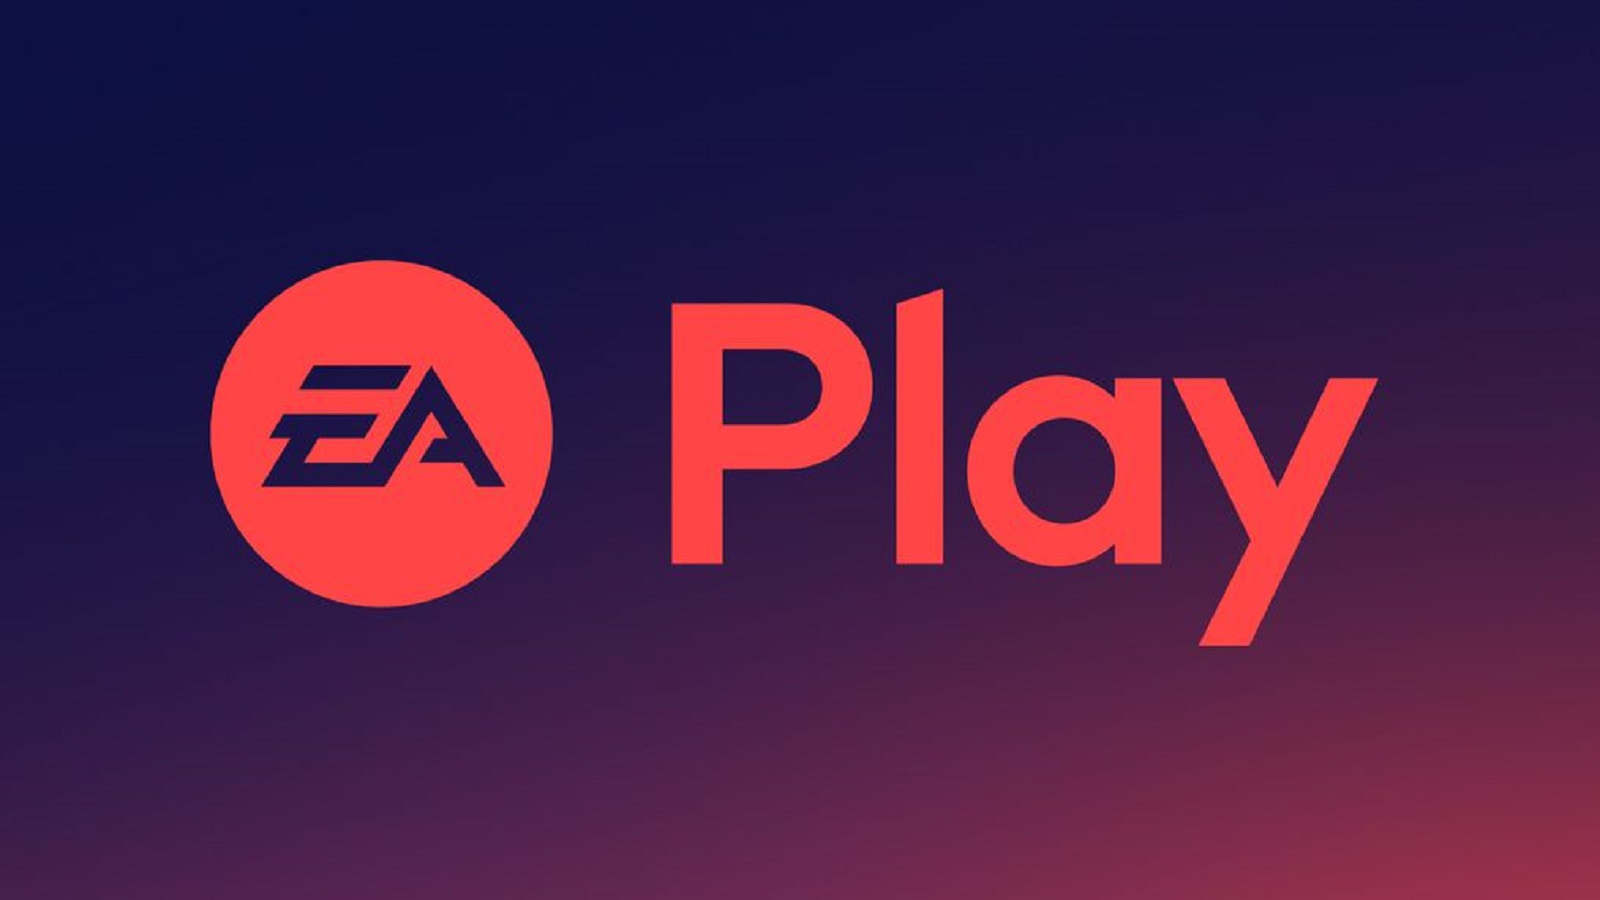 Xbox Game Pass : les abonnées auront accès au service EA Play sans frais supplémentaires